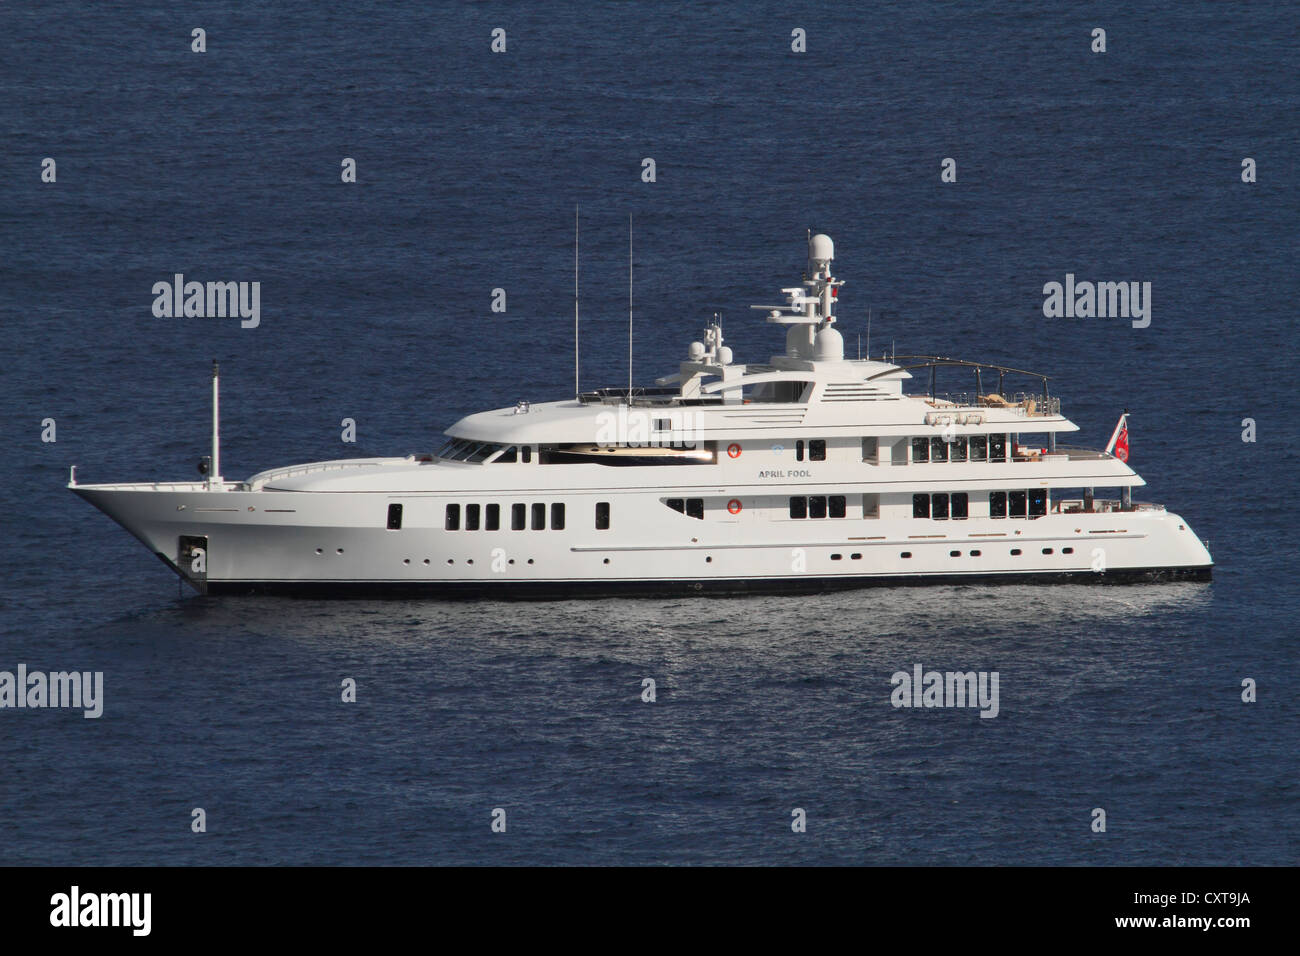 Motor Yacht, sciocco di aprile, costruito da Feadship, lunghezza 60,96 metri, costruita nel 2006, sulla Côte d'Azur, Mediterraneo, Francia Foto Stock